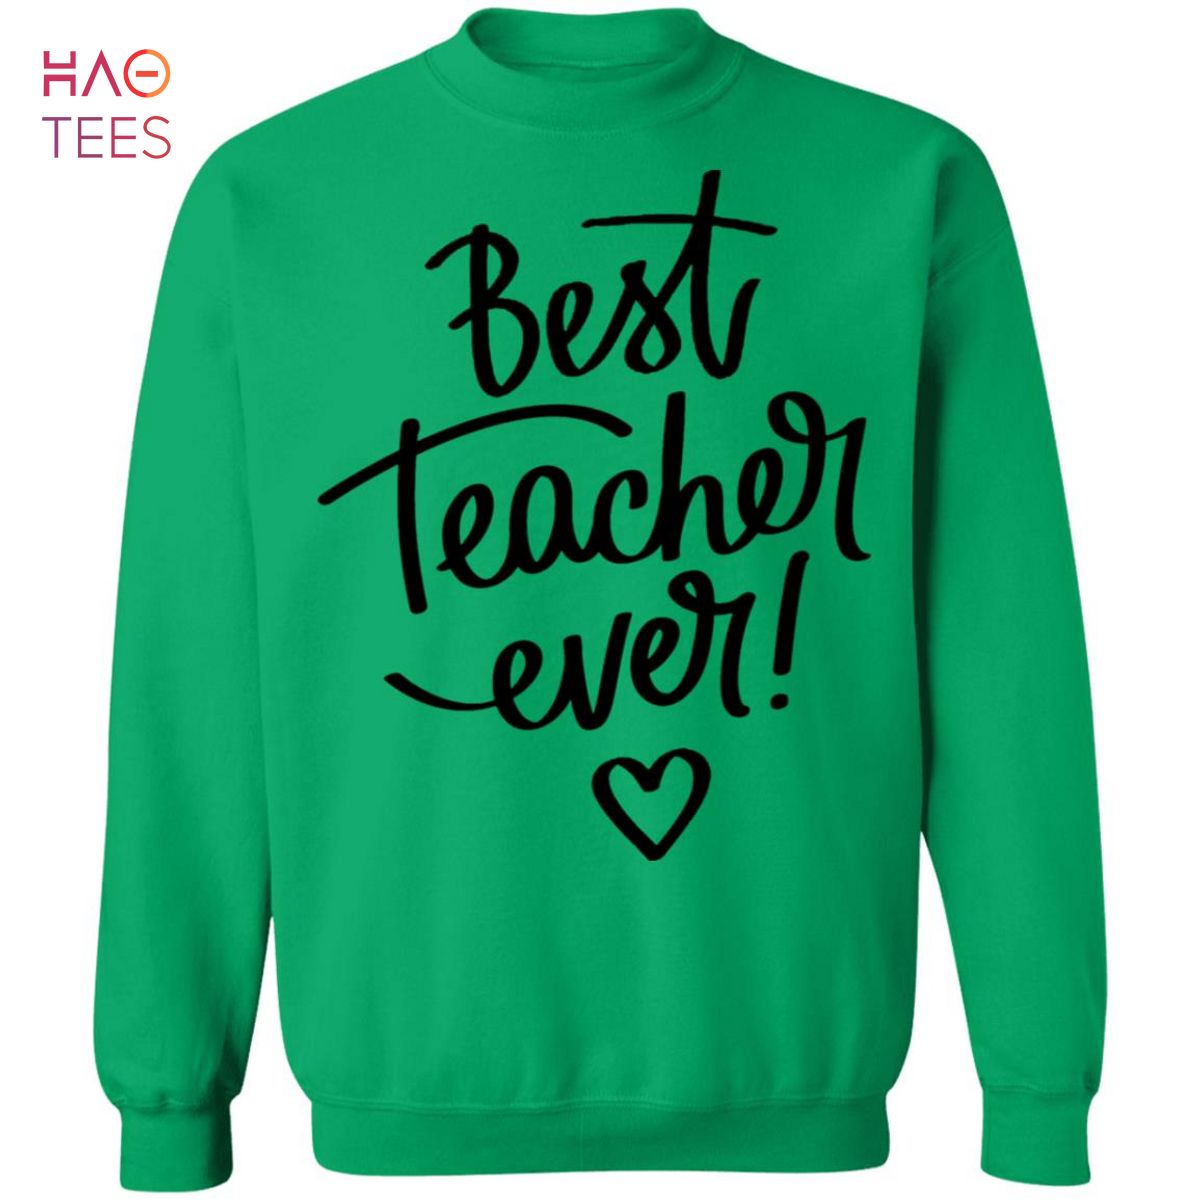 BEST Best Teacher Ever Sweater